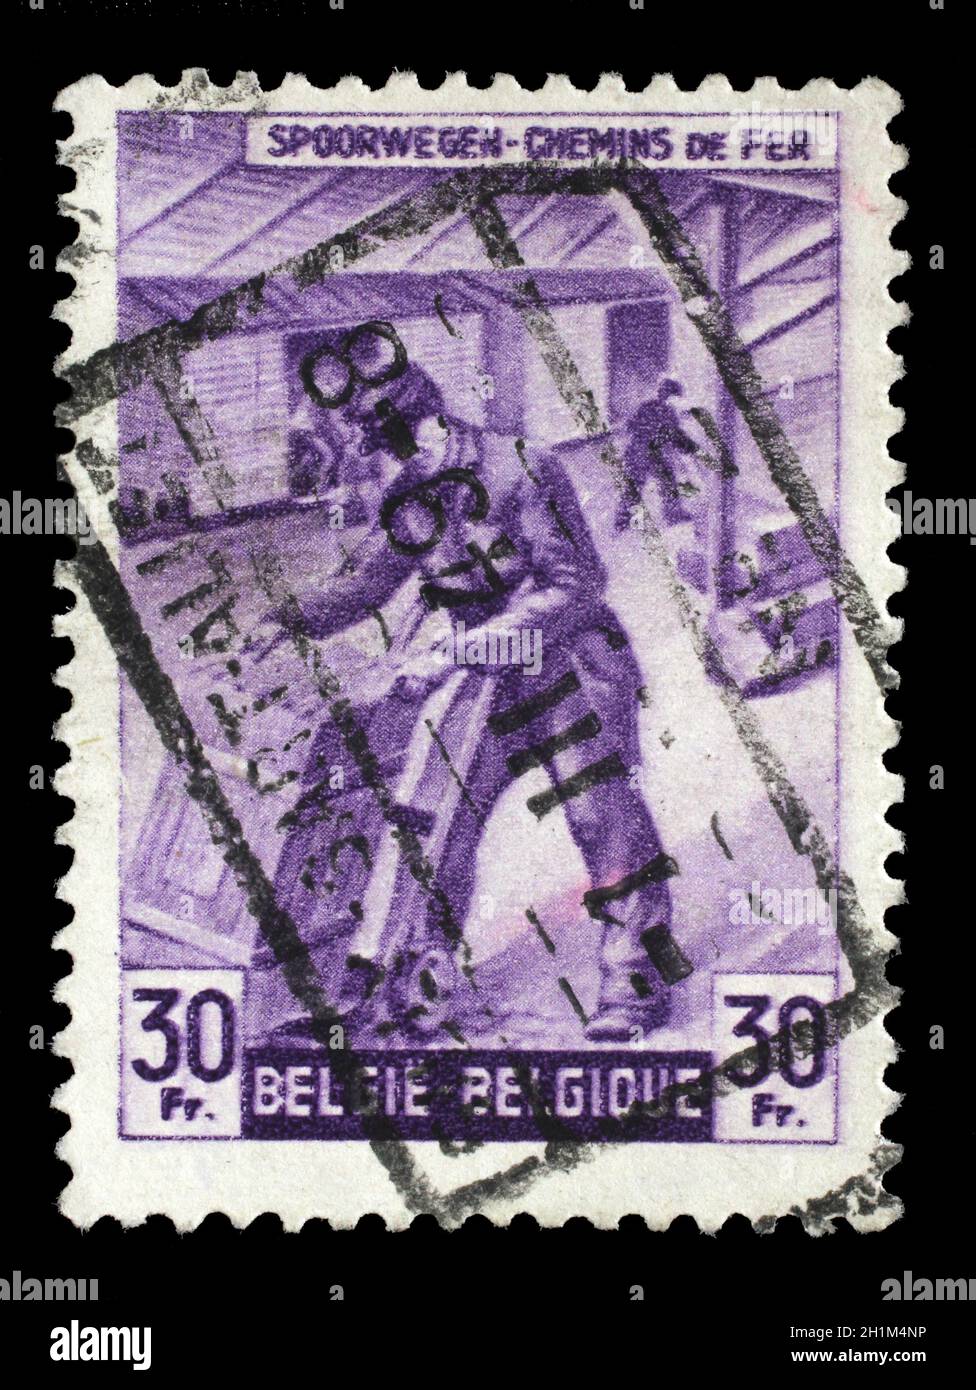 Briefmarke gedruckt in Belgien zeigt Box-Versender von der Eisenbahngesellschaft in Frage, ca. 1945. Stockfoto